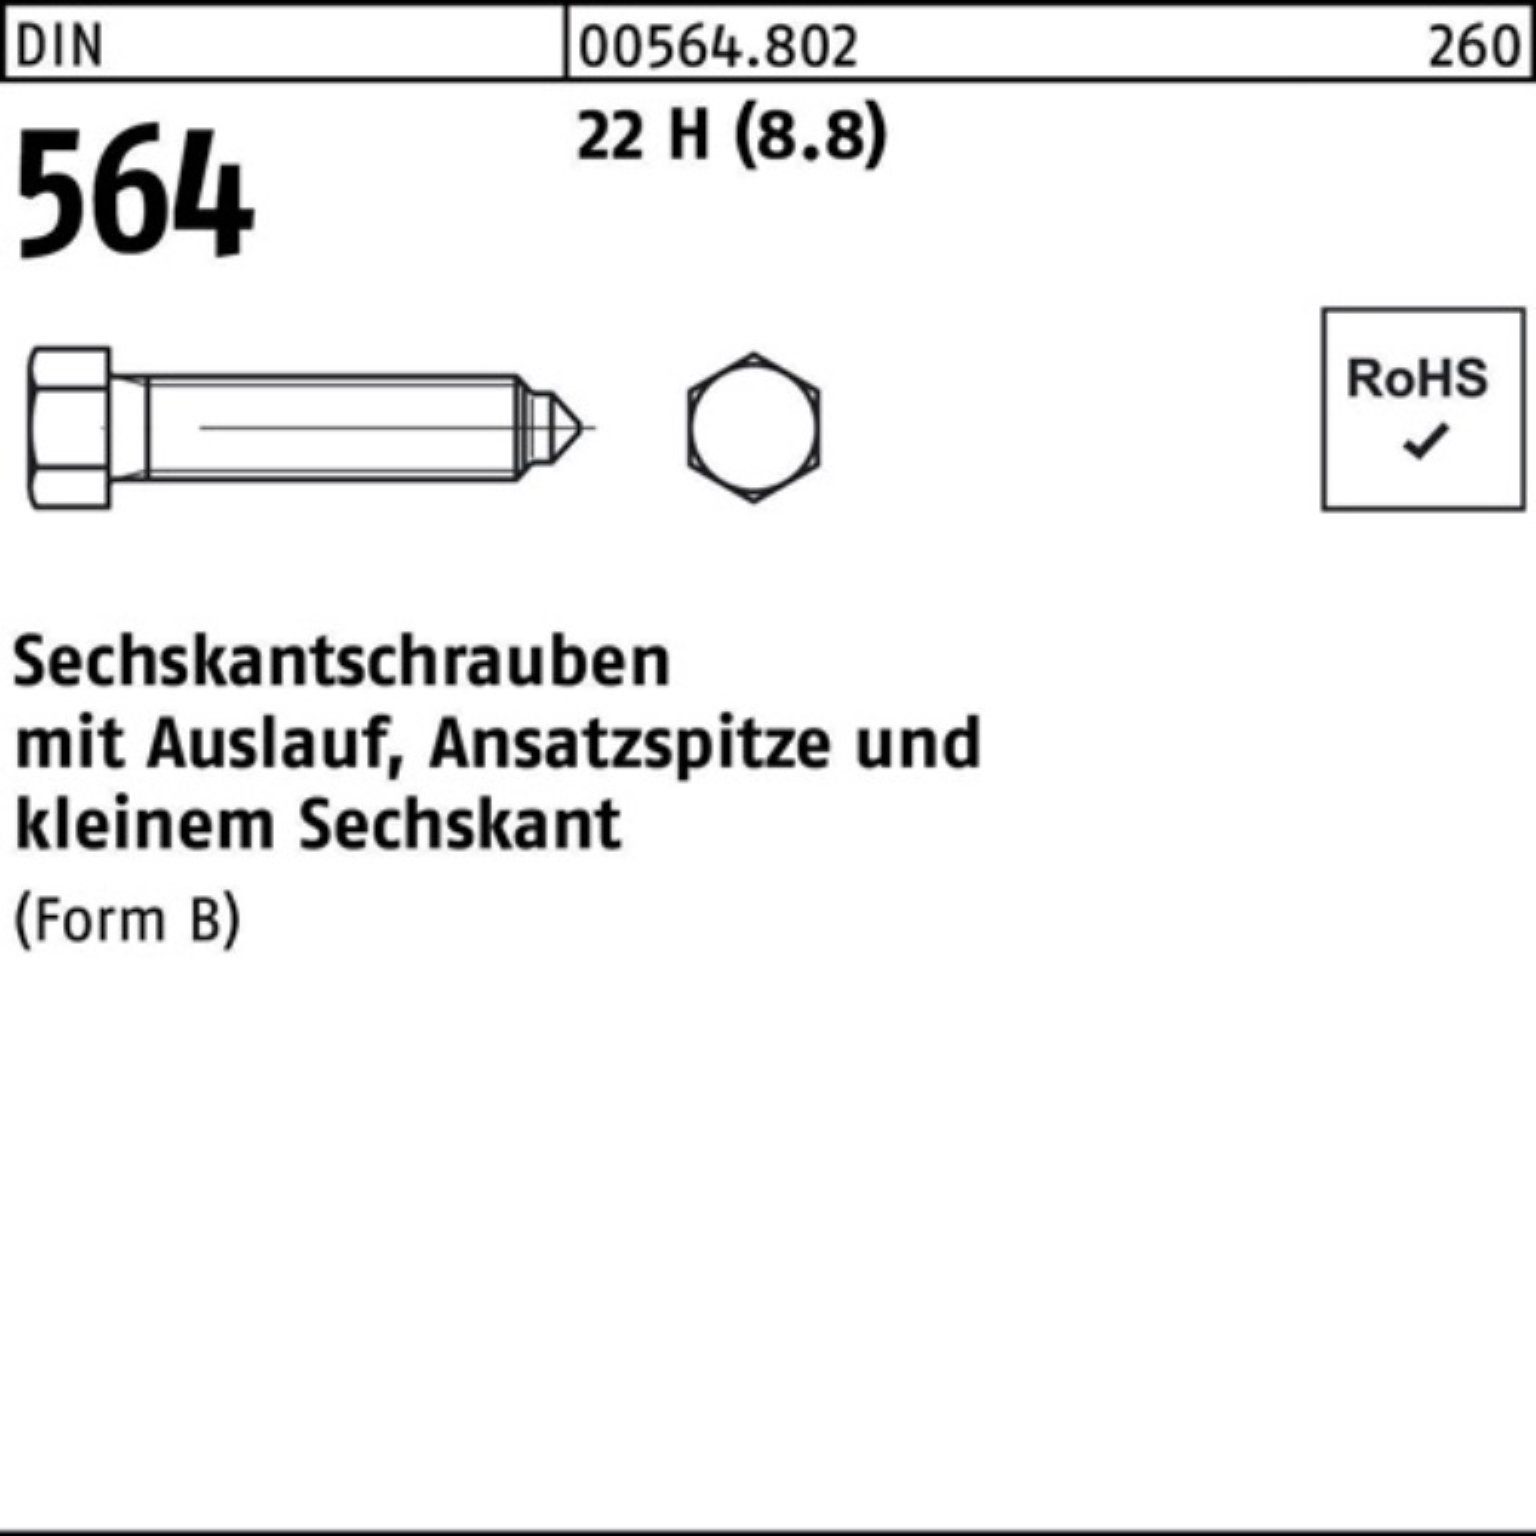 Reyher Sechskantschraube Sechskantschraube 564 100er DIN Pack 8x Ansatzspitze/Auslauf BM 35 22